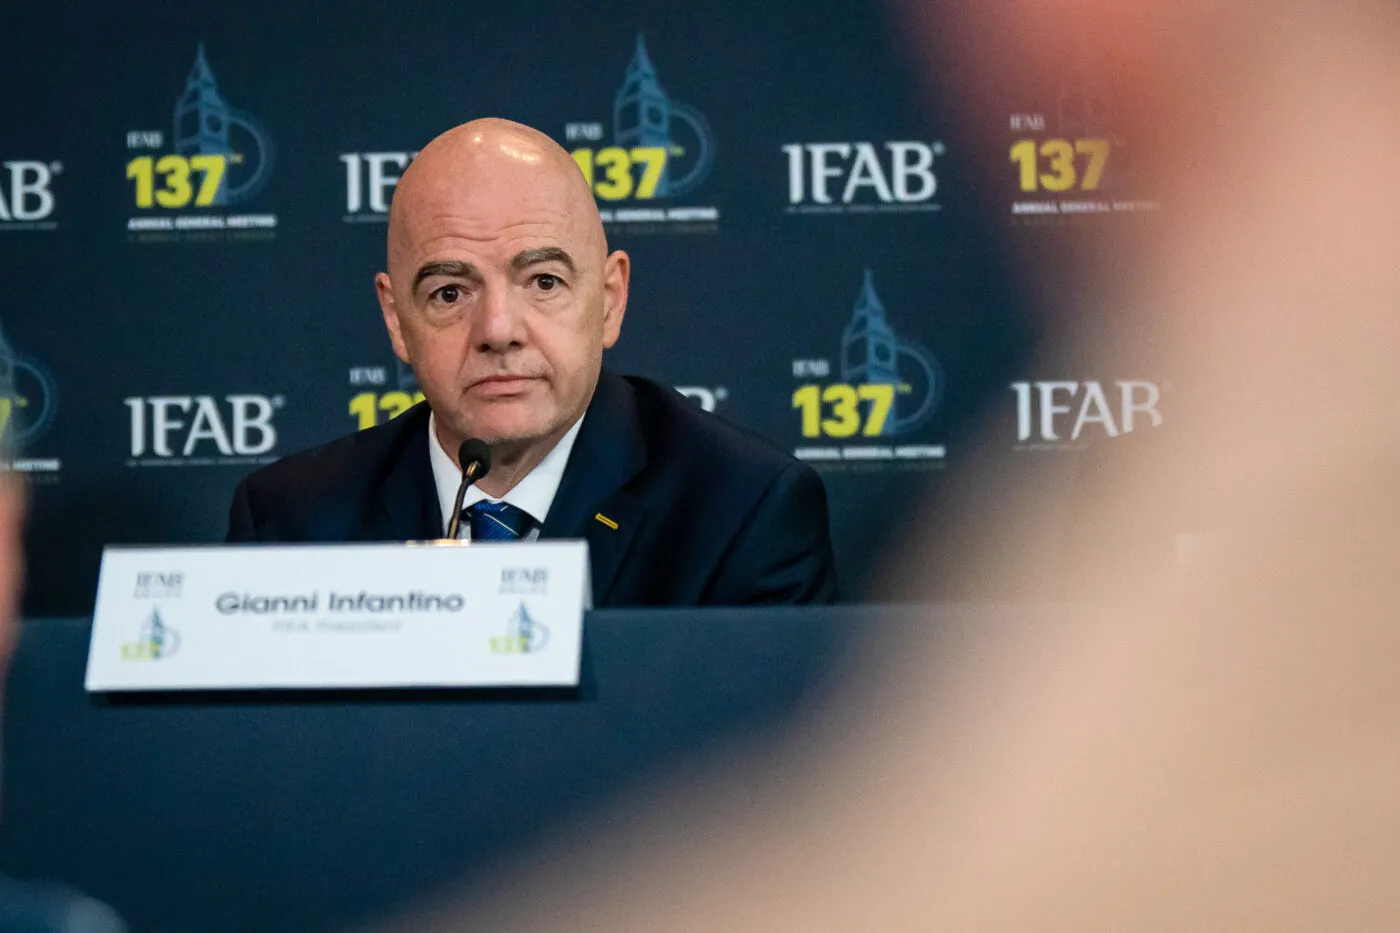 La FIFA annonce la clôture d’une procédure à l’encontre de Gianni Infantino